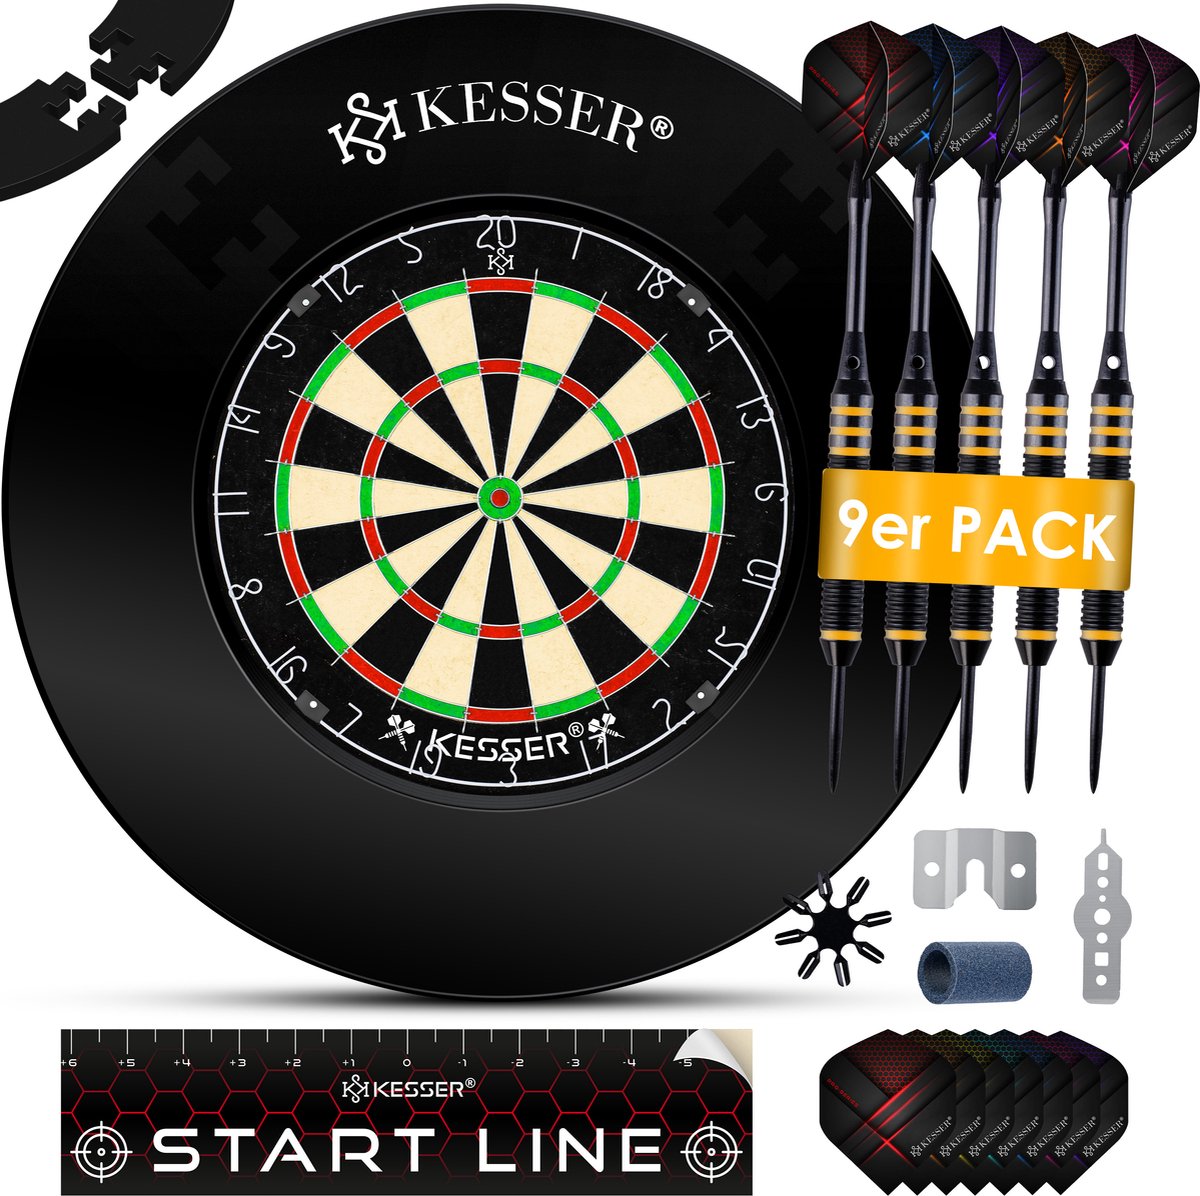 KESSER® Dartbord Sisal met Surround Ring Zwart - 38-delige Dart Set inclusief 9x Dartpijlen en 21x Dartflights + Accessoires